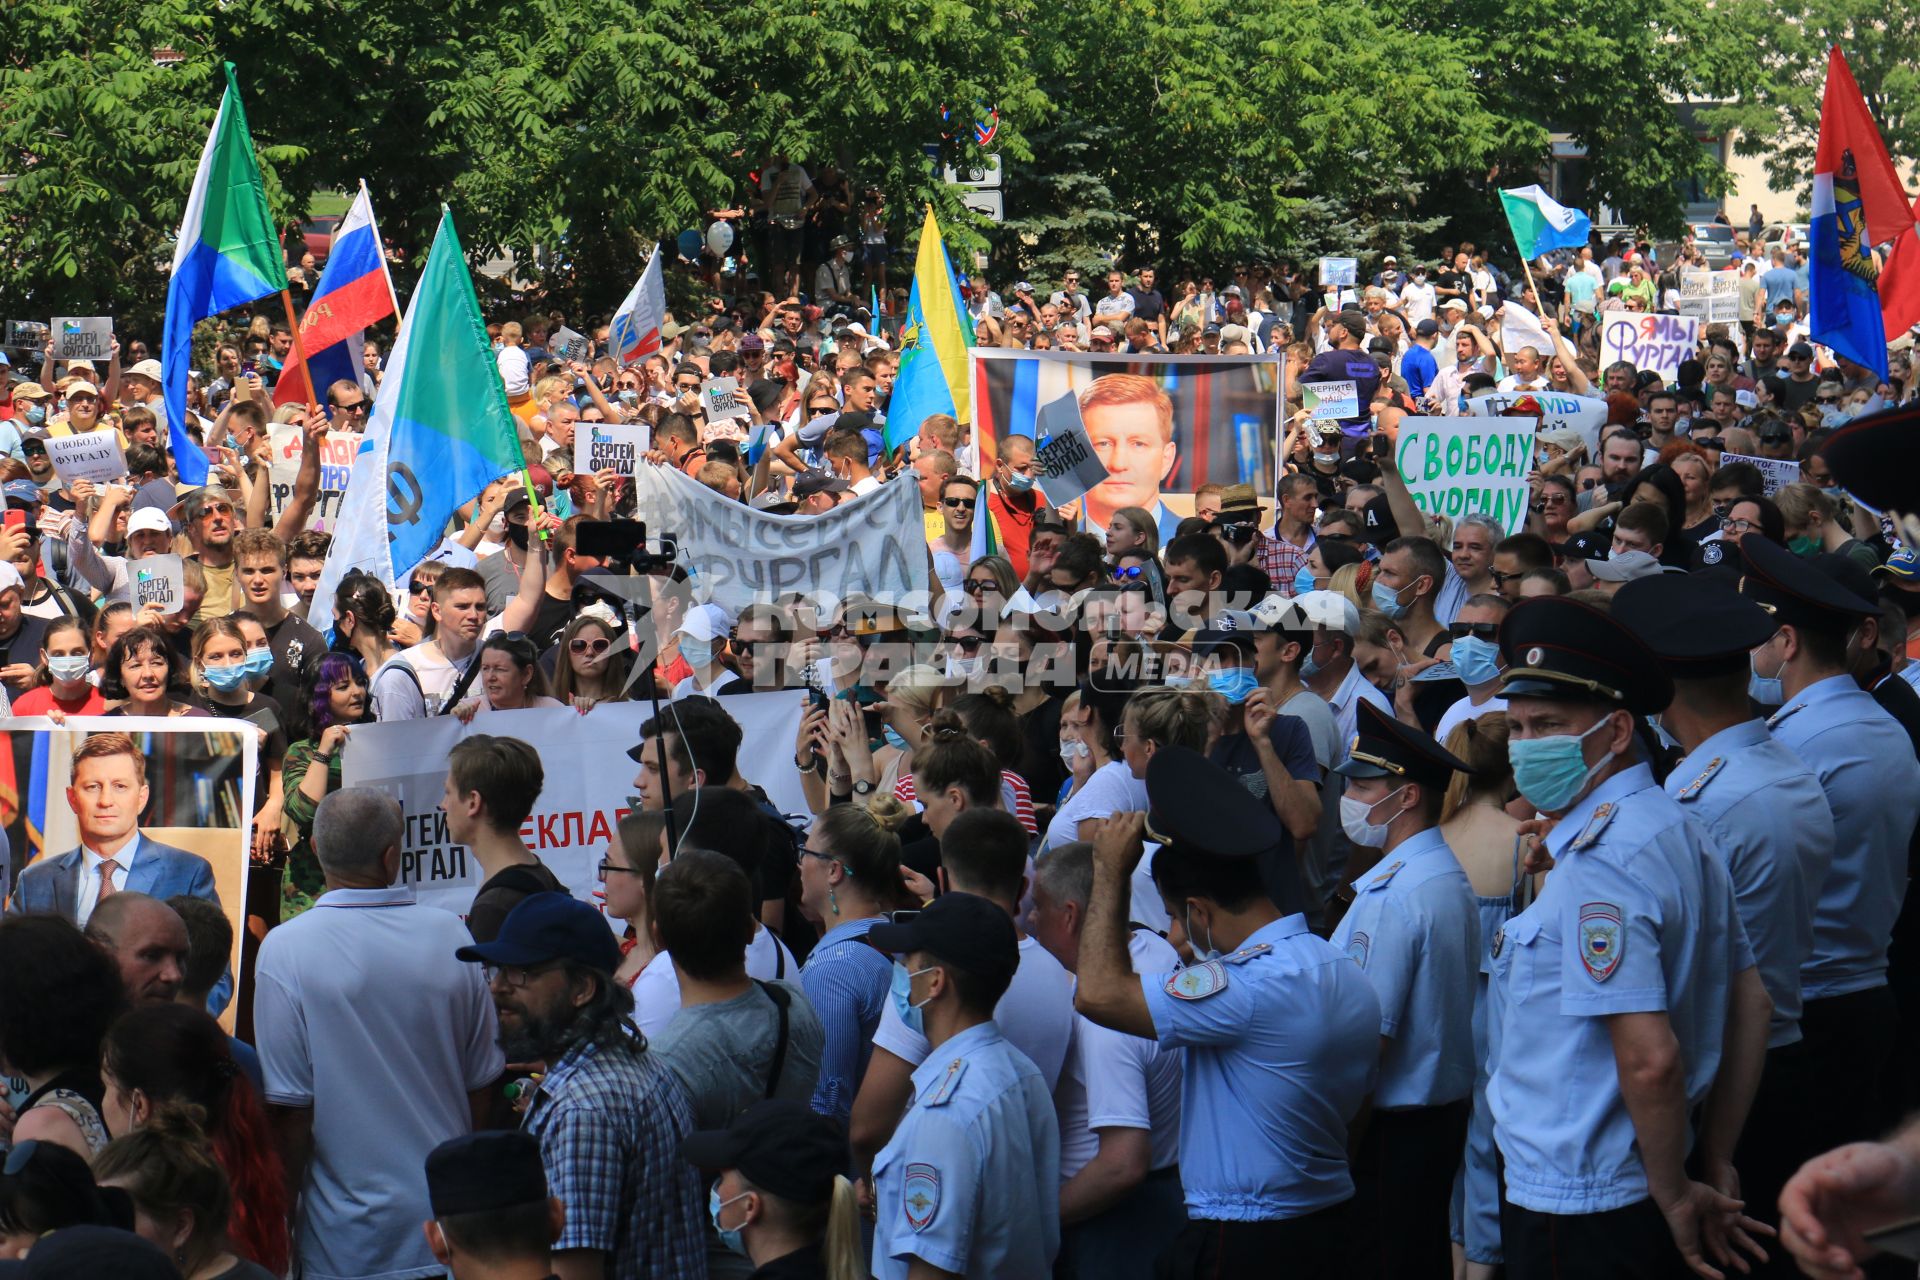 Хабаровск. Участники несанкционированного митинга в поддержку губернатора Хабаровского края Сергея Фургала.